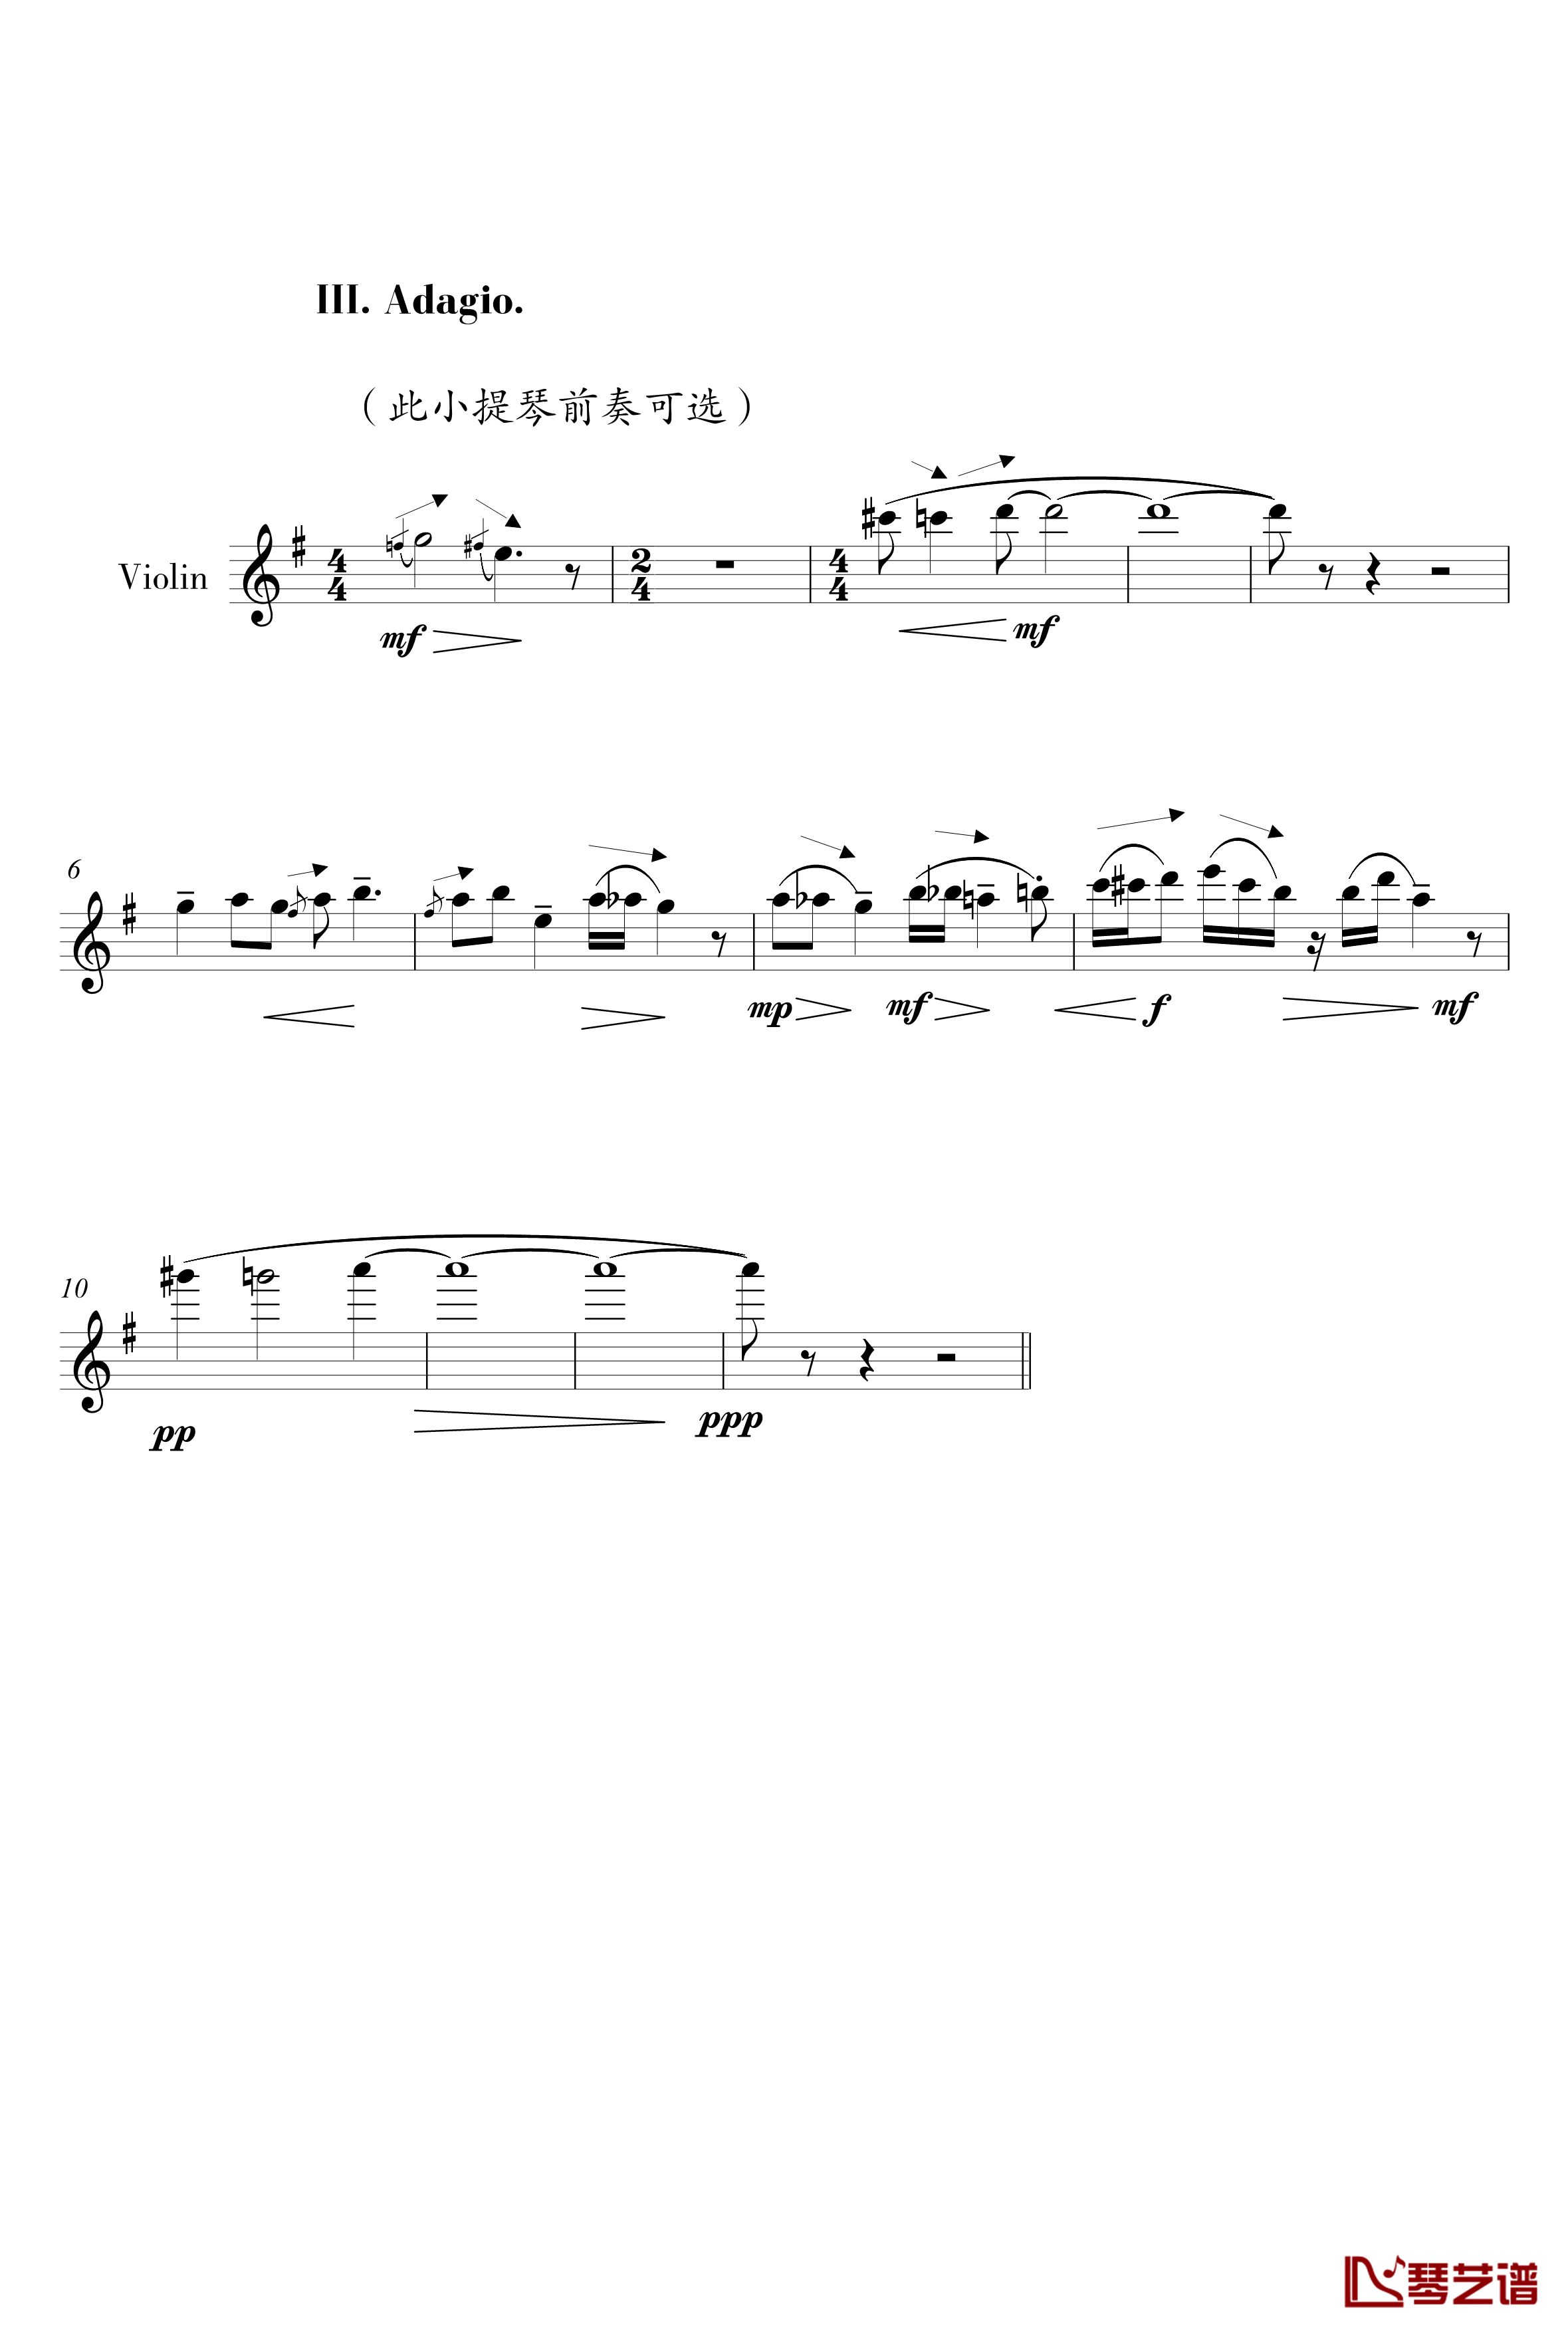 中国风格的合唱摇篮曲三首钢琴谱-I, II, III-陈文戈14